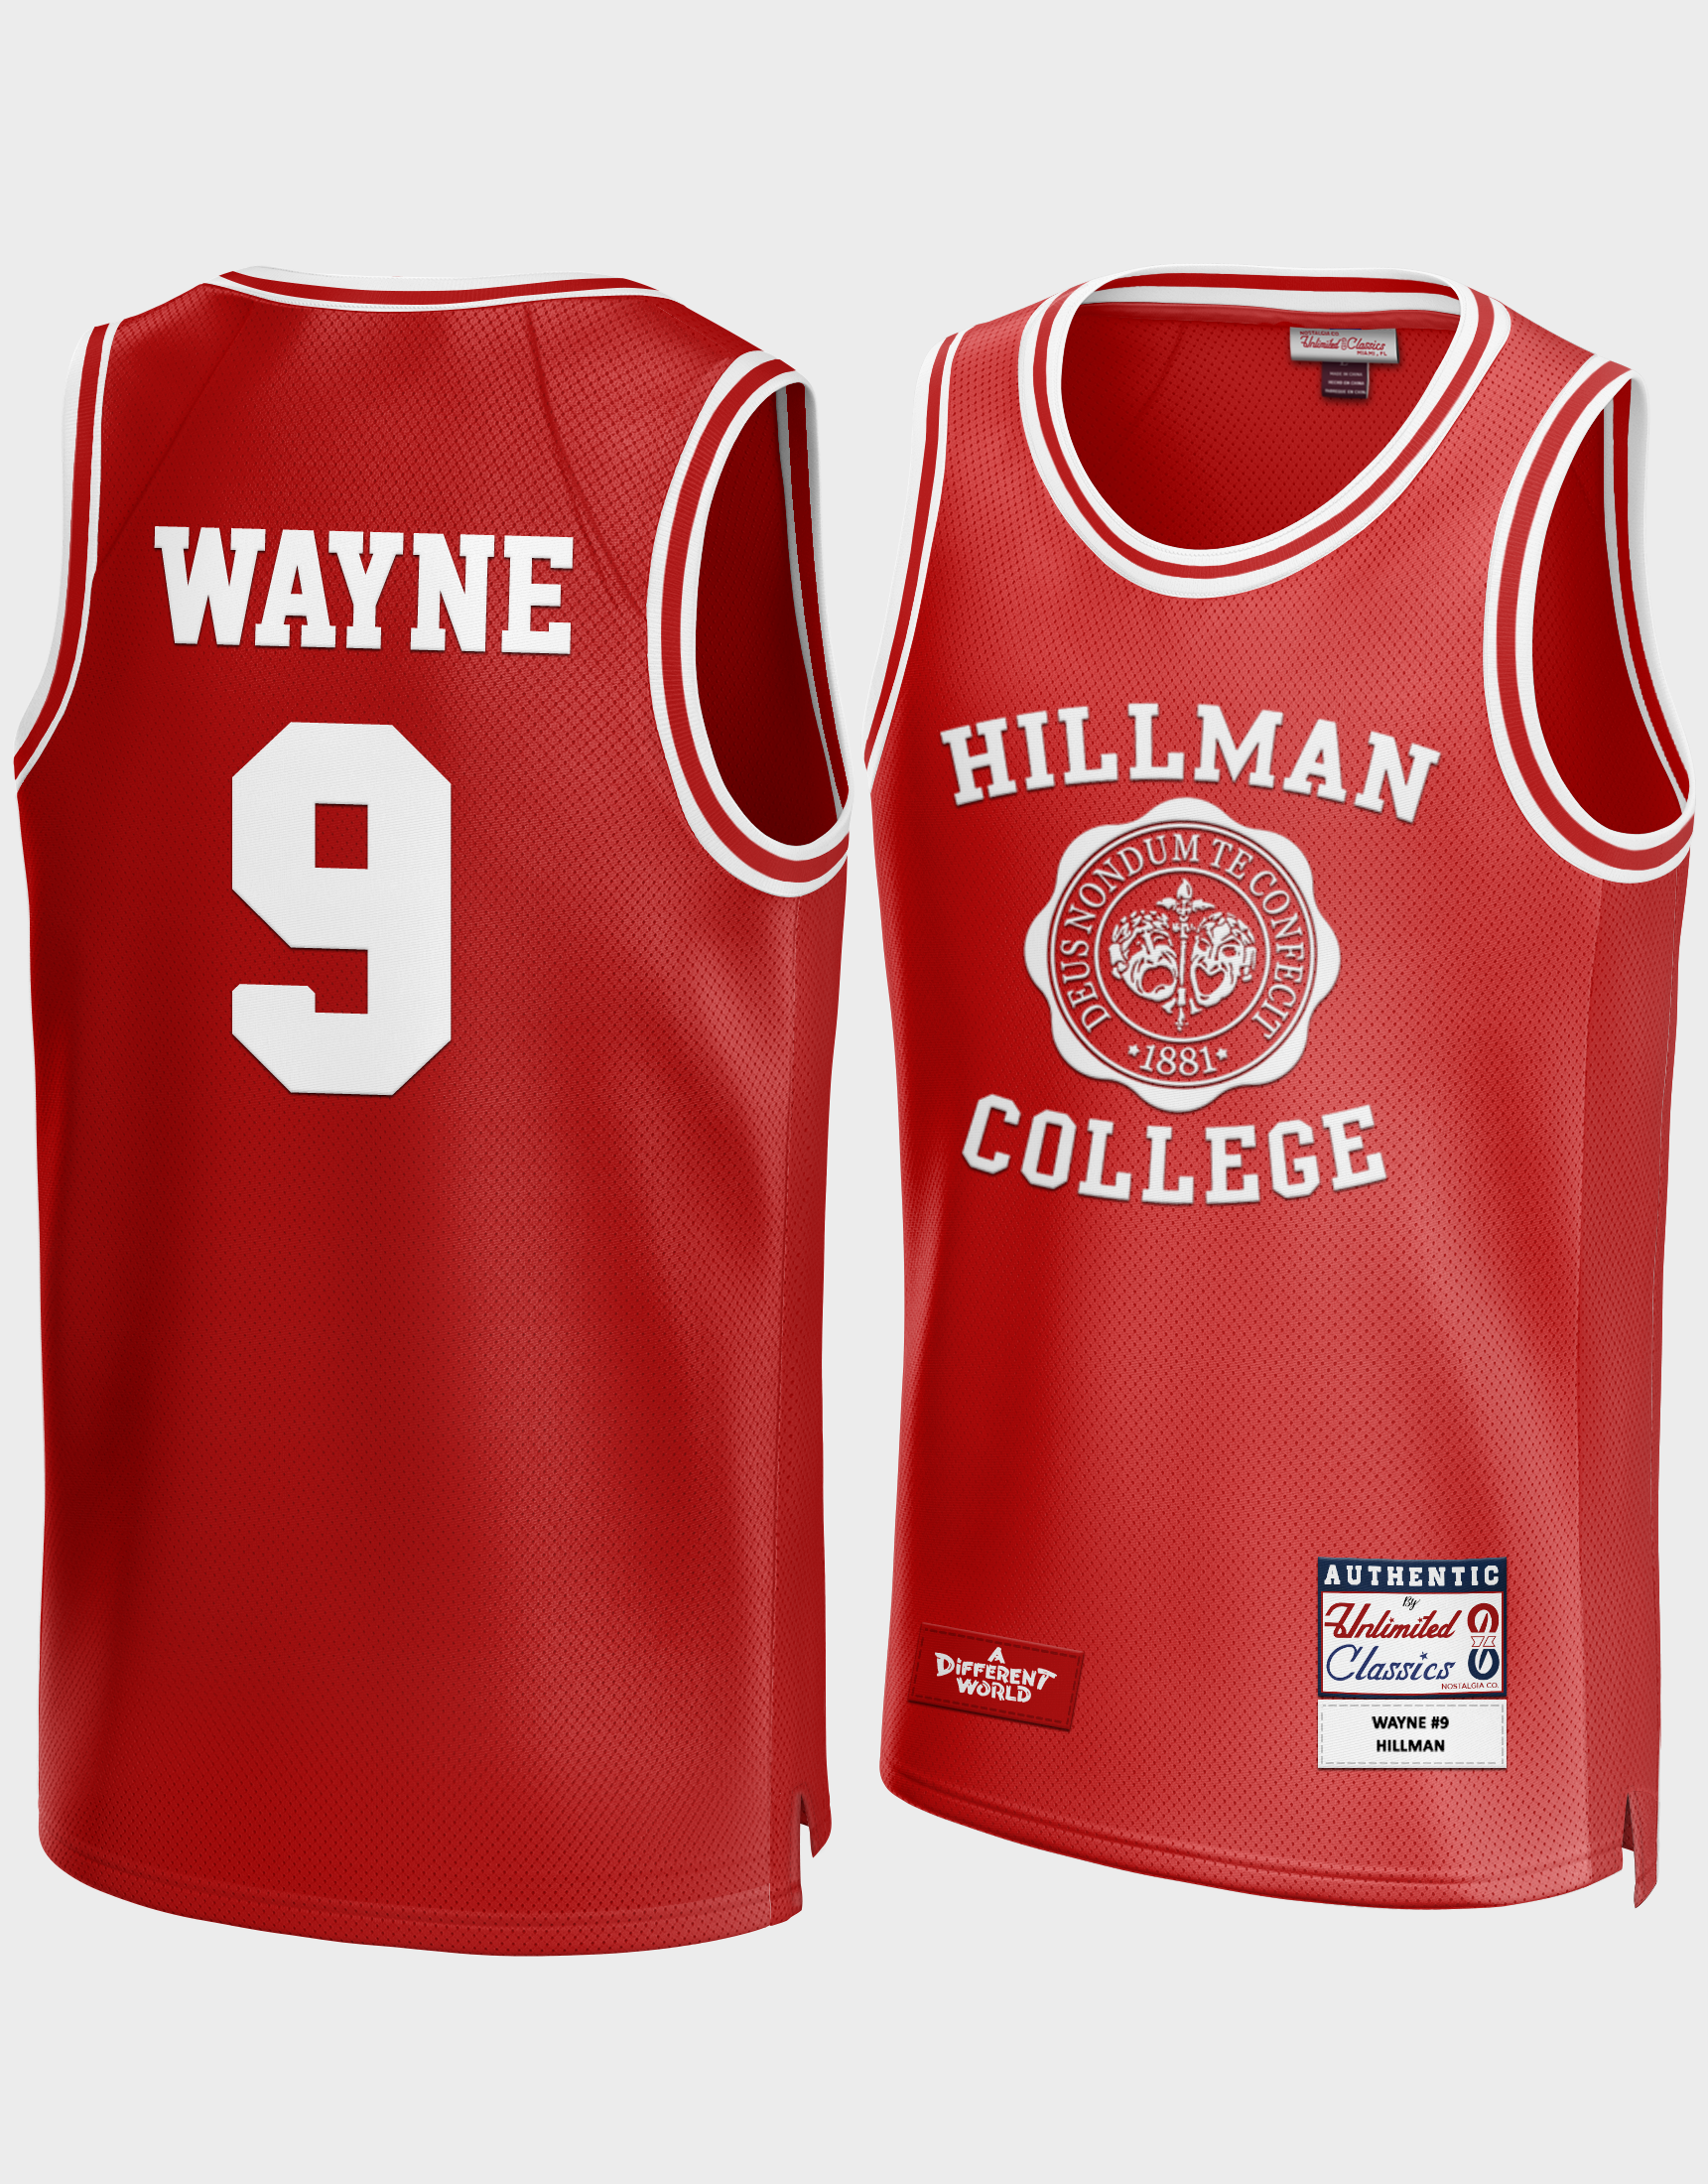 Dwayne Wayne #9 A Different World Hillman Red Jersey